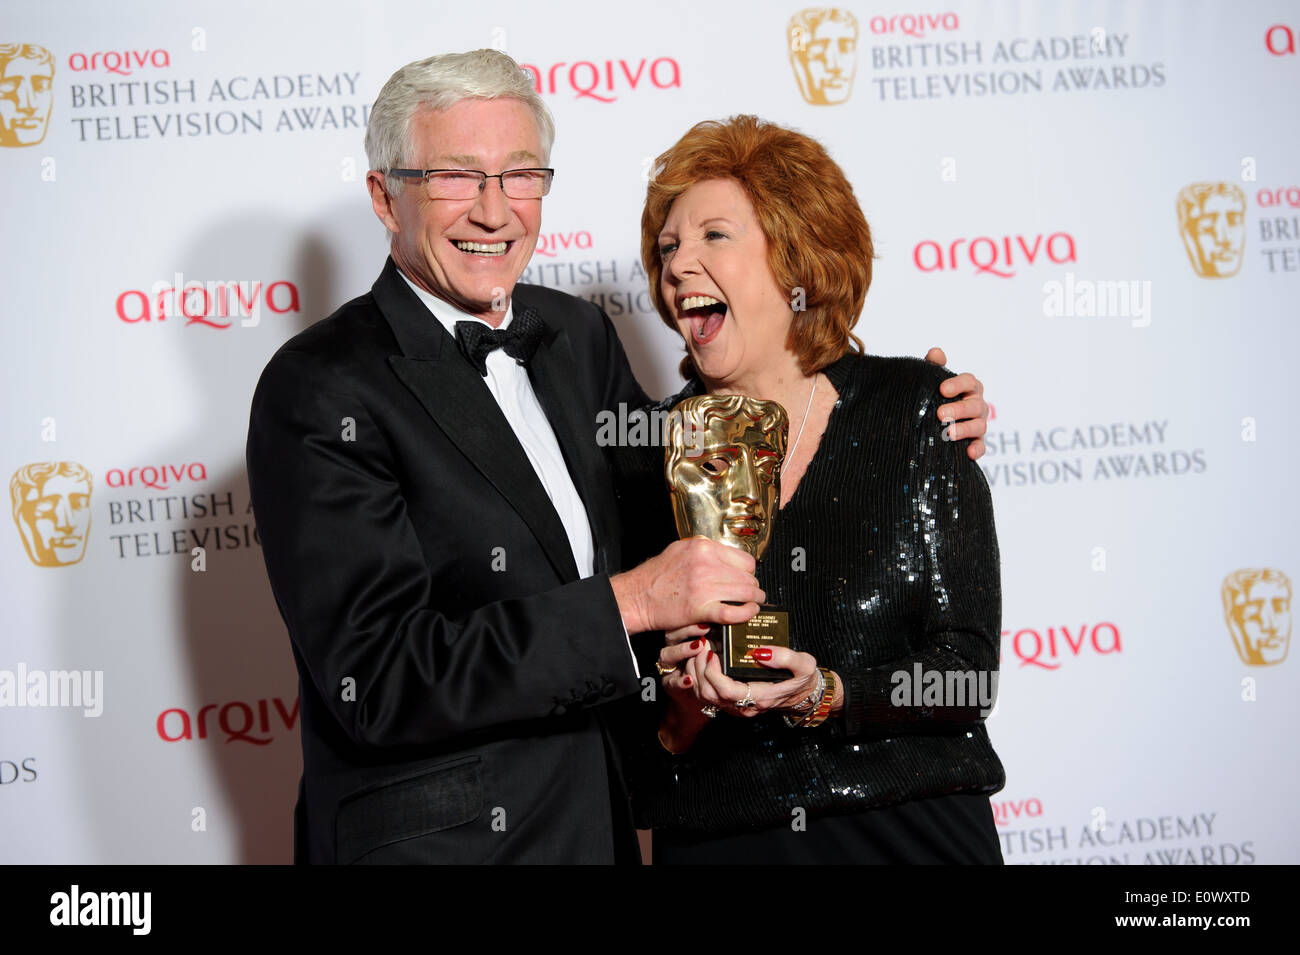 Paul O'Grady et Cilla Black poser pour les photographes dans les gagnants prix de la British Academy Television Awards. Banque D'Images